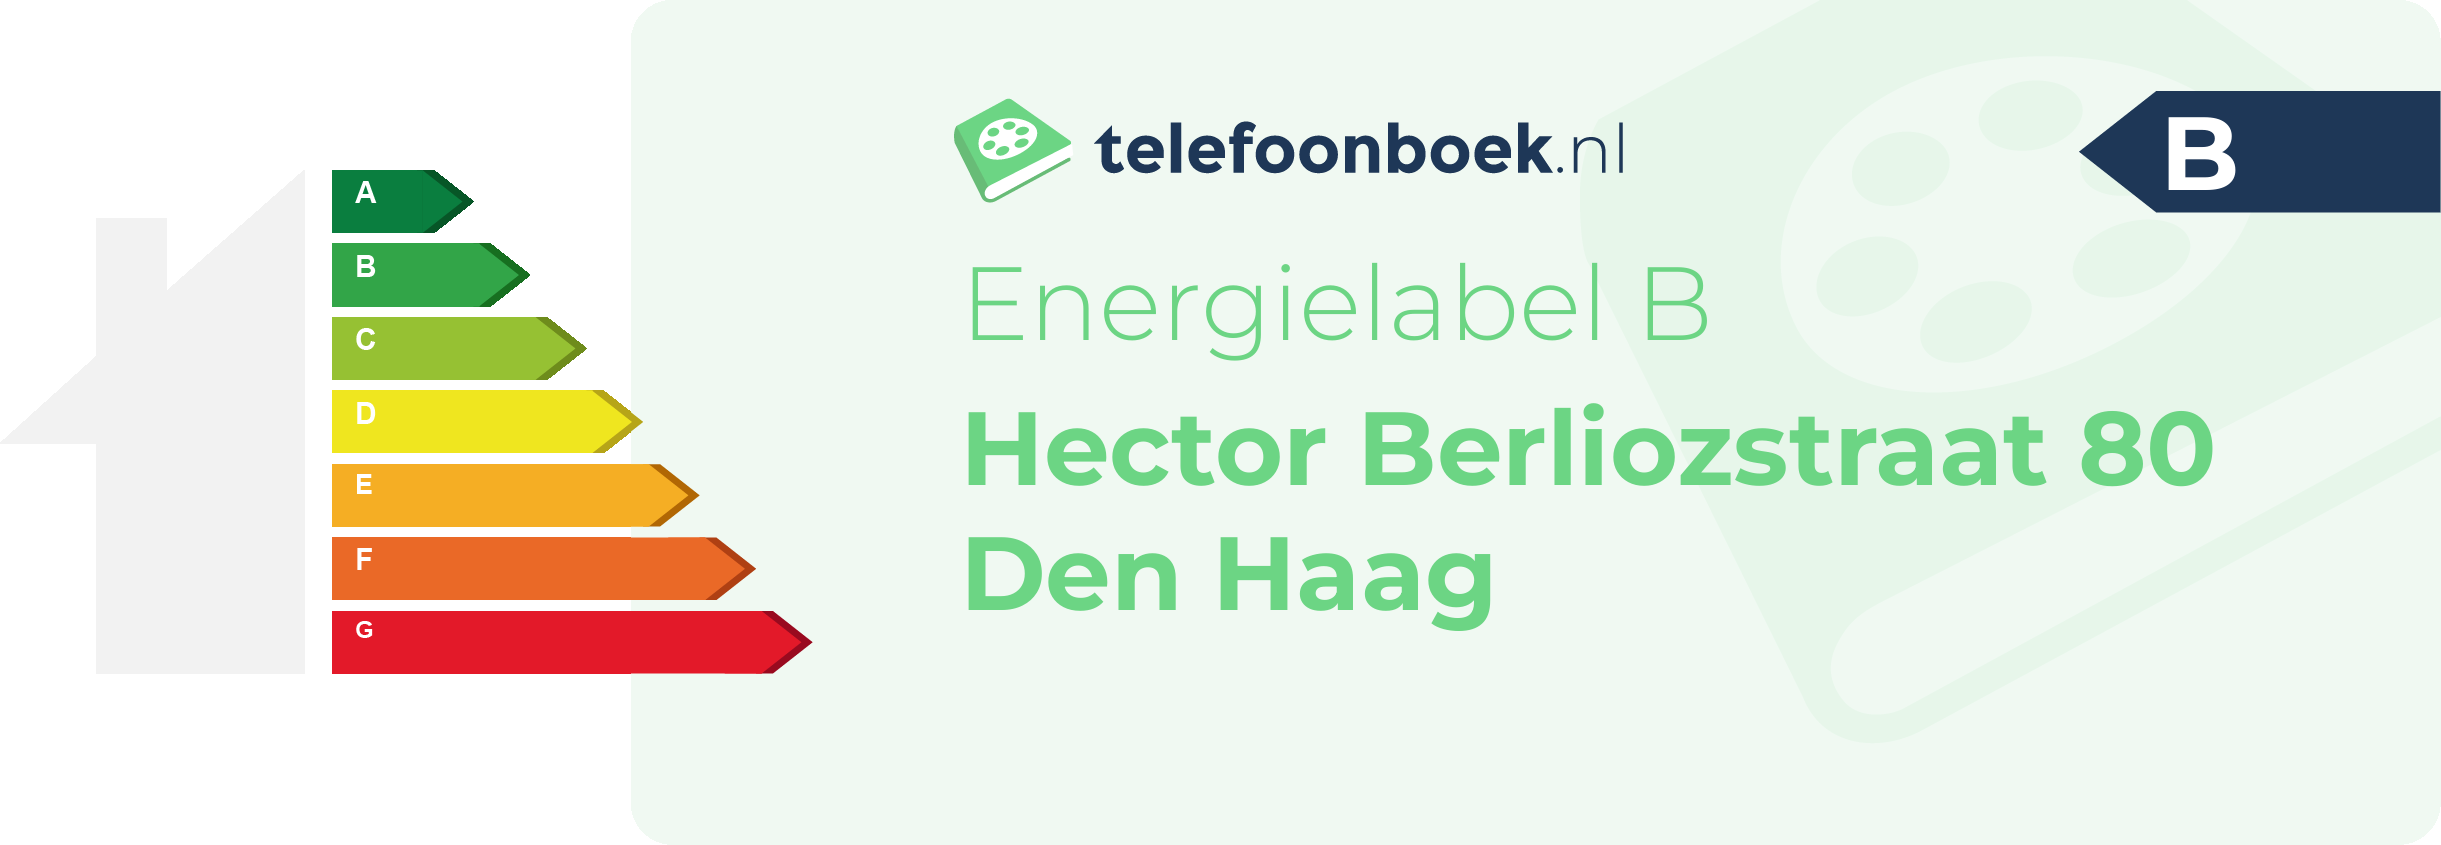 Energielabel Hector Berliozstraat 80 Den Haag